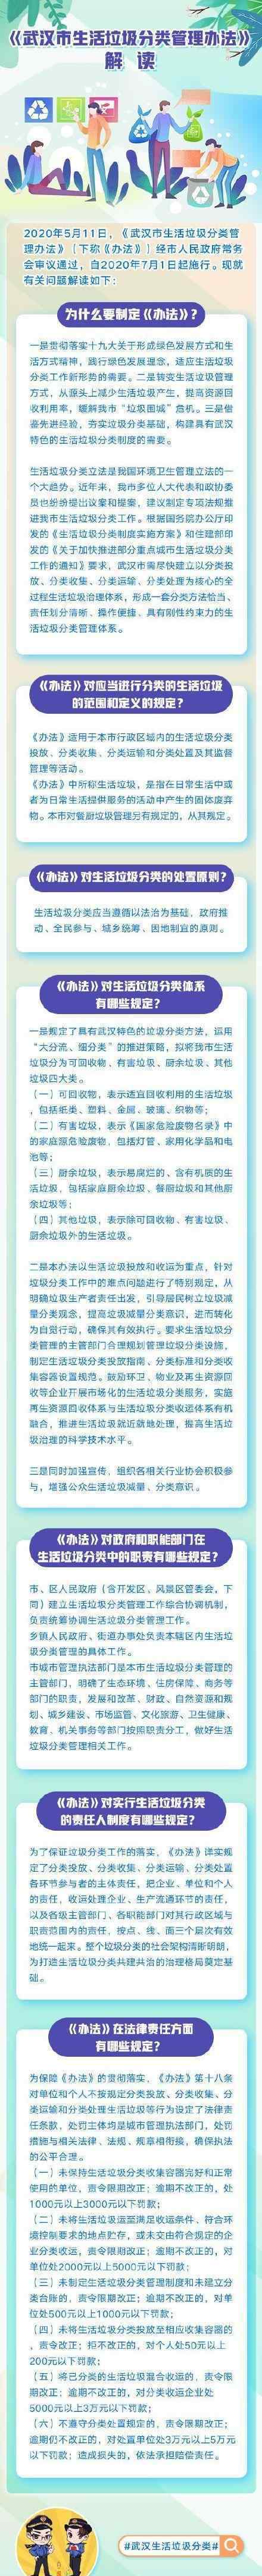 武汉生活垃圾分类 7月1日起实施生活垃圾分类